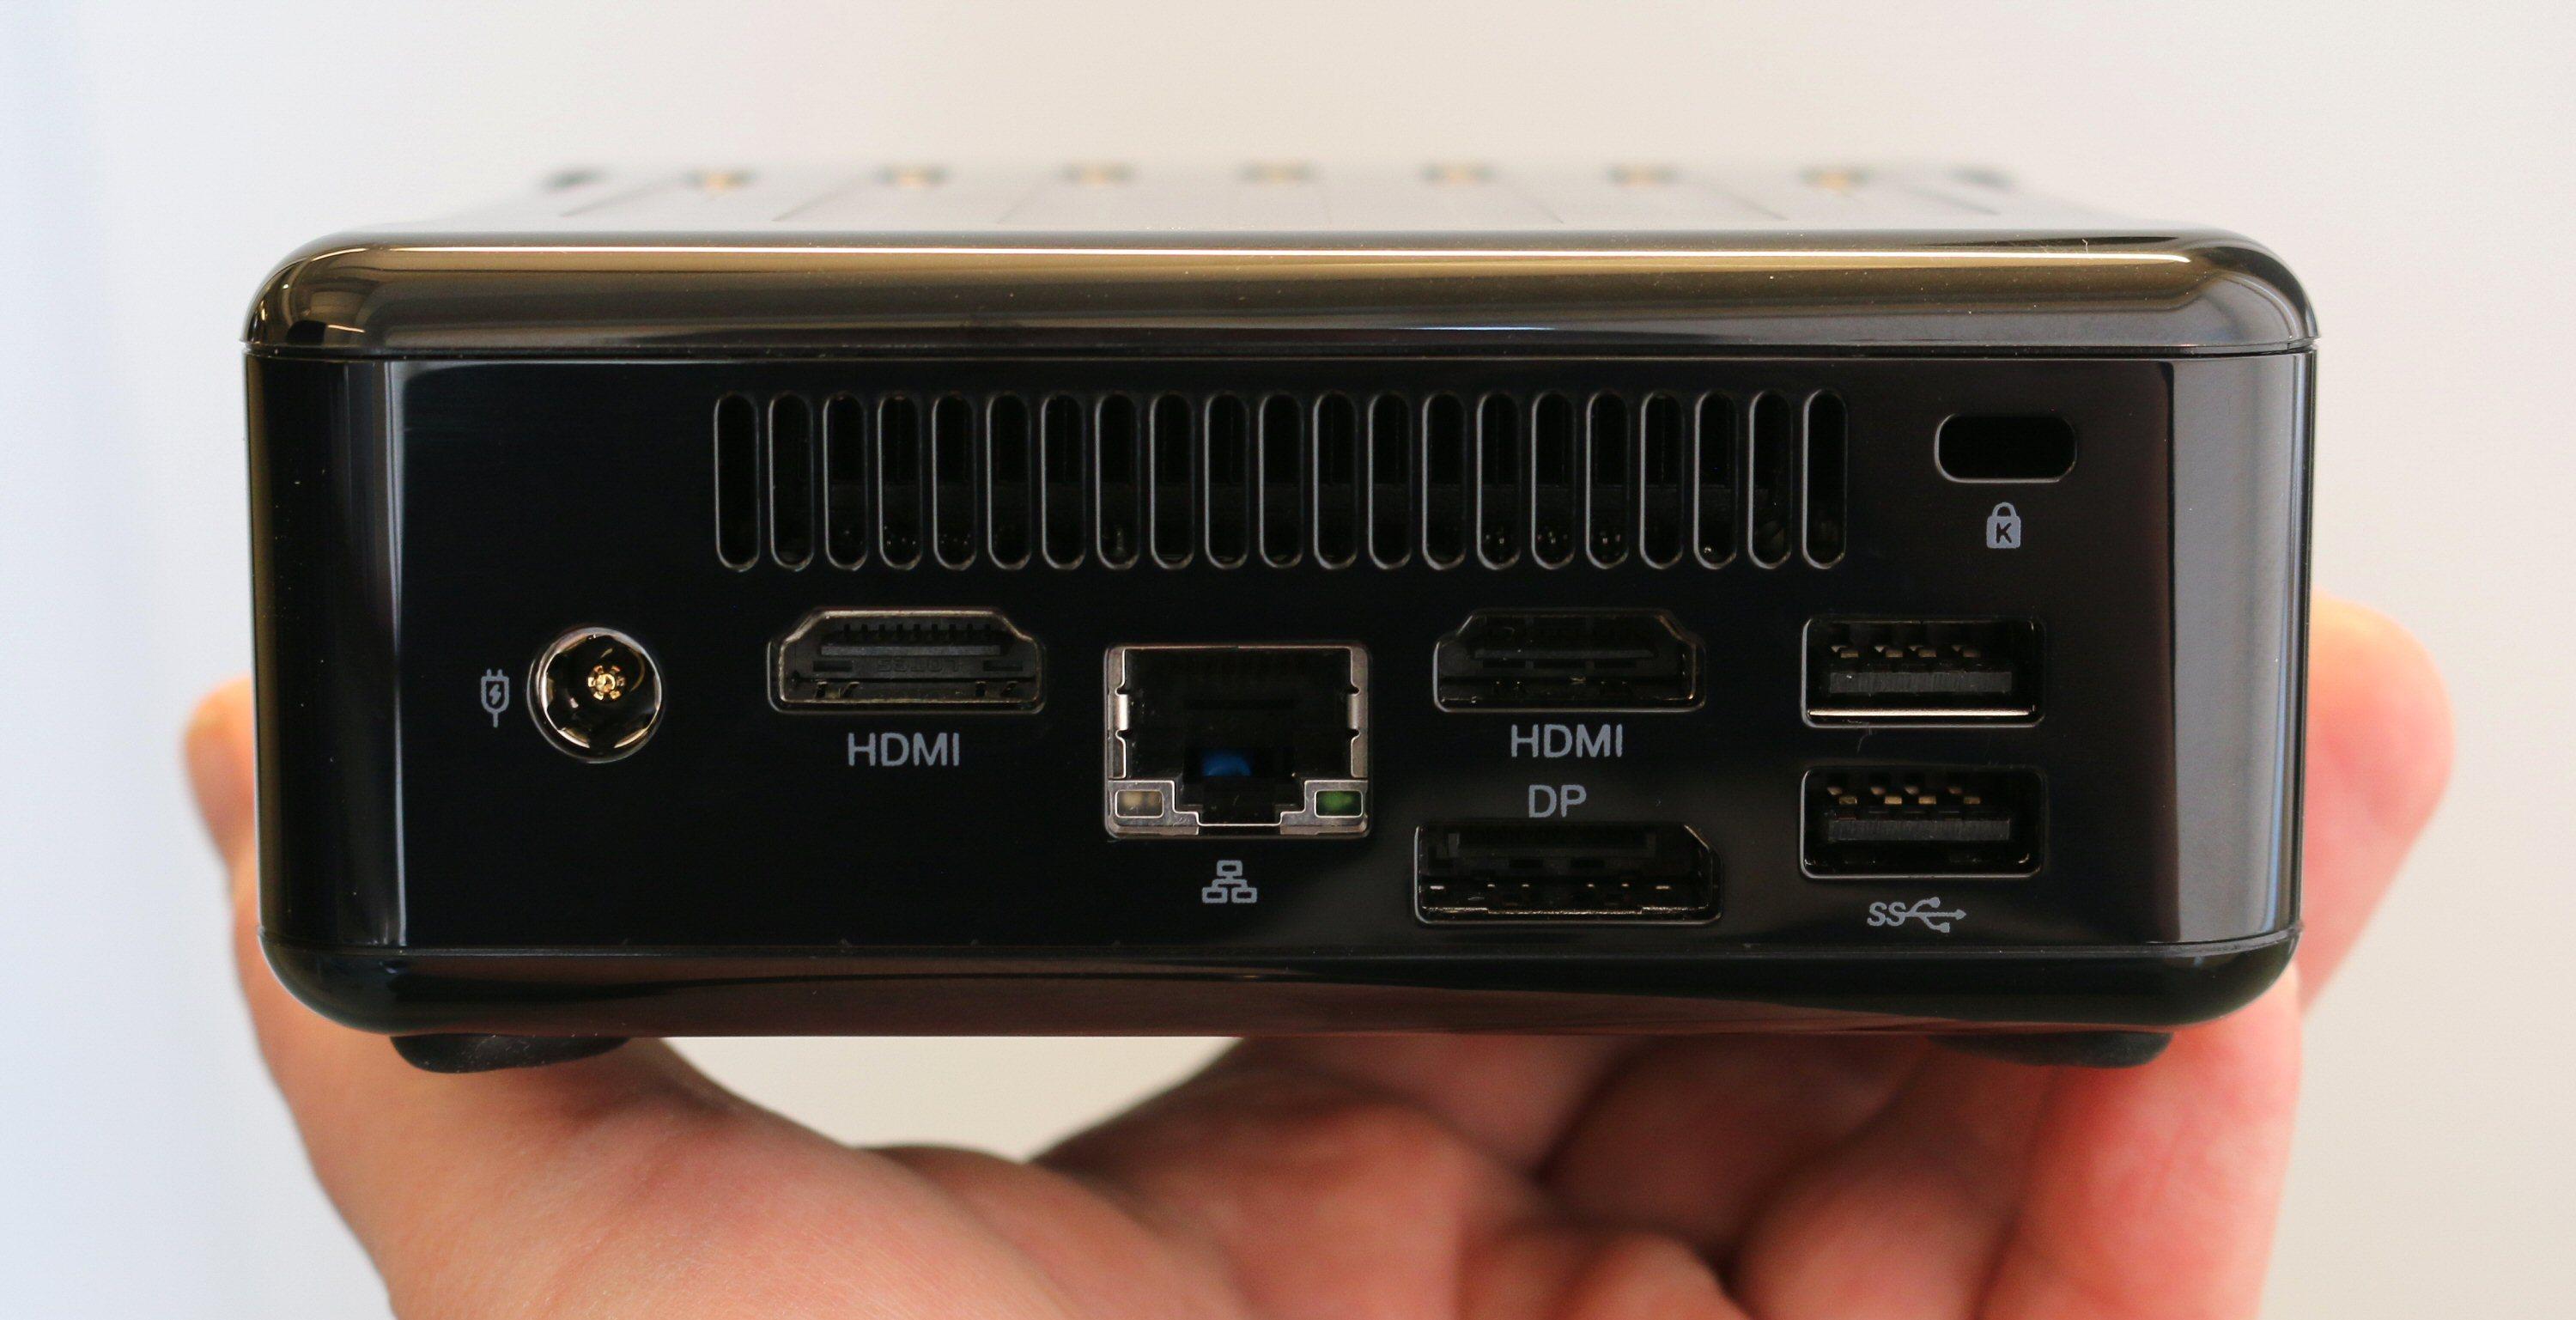 ASRock Beebox-S har to HDMI-porter, DisplayPort, gigabit LAN og to USB 3.0-porter. Varm luft kommer ut øverst. Plass til kensingtonlås oppe til høyre, strøminntak til venstre.